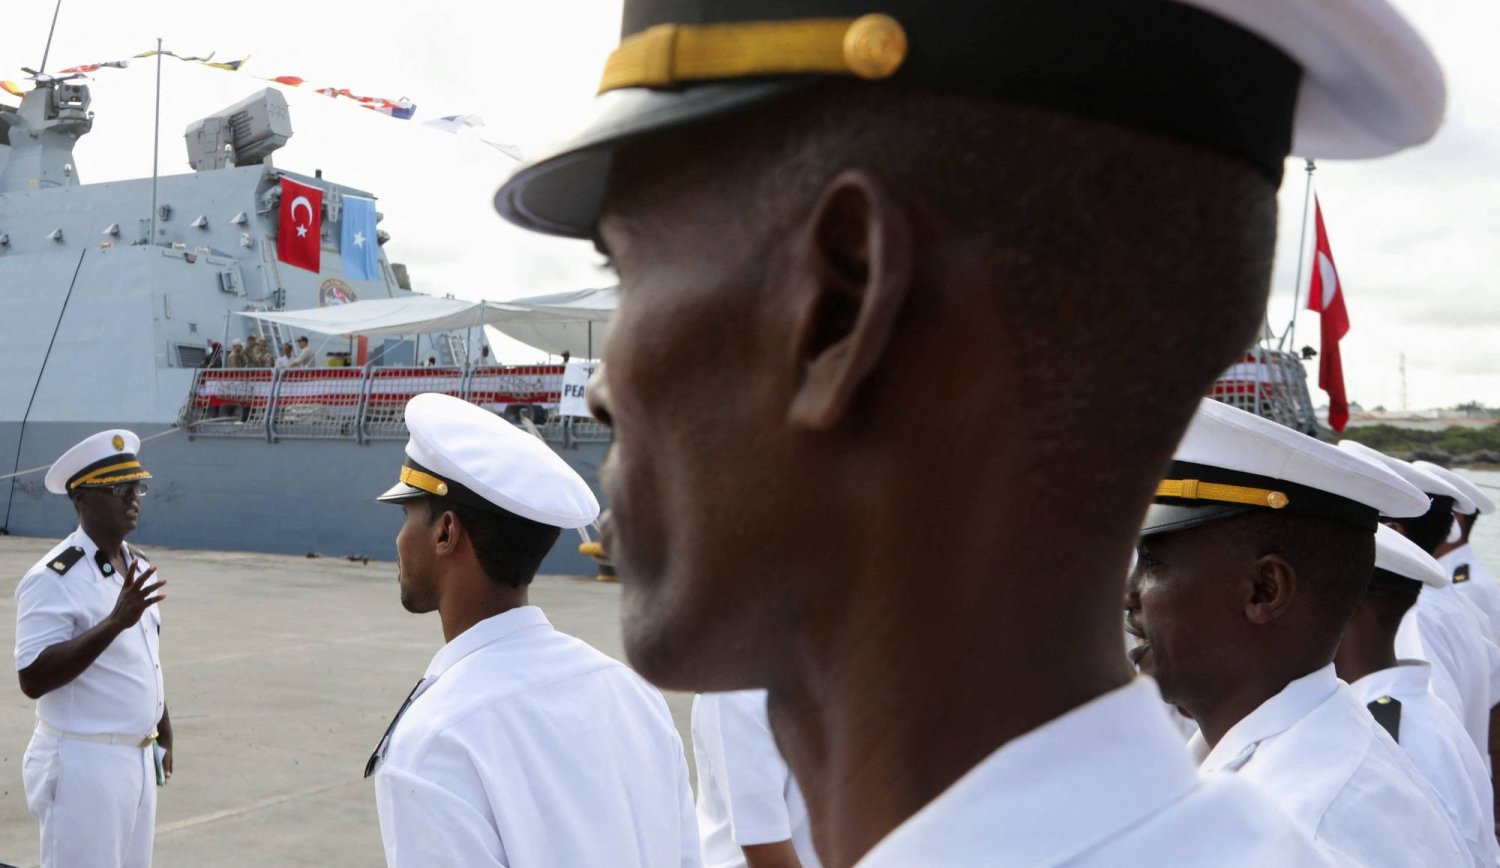 قوات عسكرية صومالية تقف بالقرب من سفينة البحرية التركية التي رست في ميناء مقديشو بعد توقيع اتفاقية دفاعية واقتصادية بين الصومال وتركيا في مقديشو الثلاثاء (رويترز)